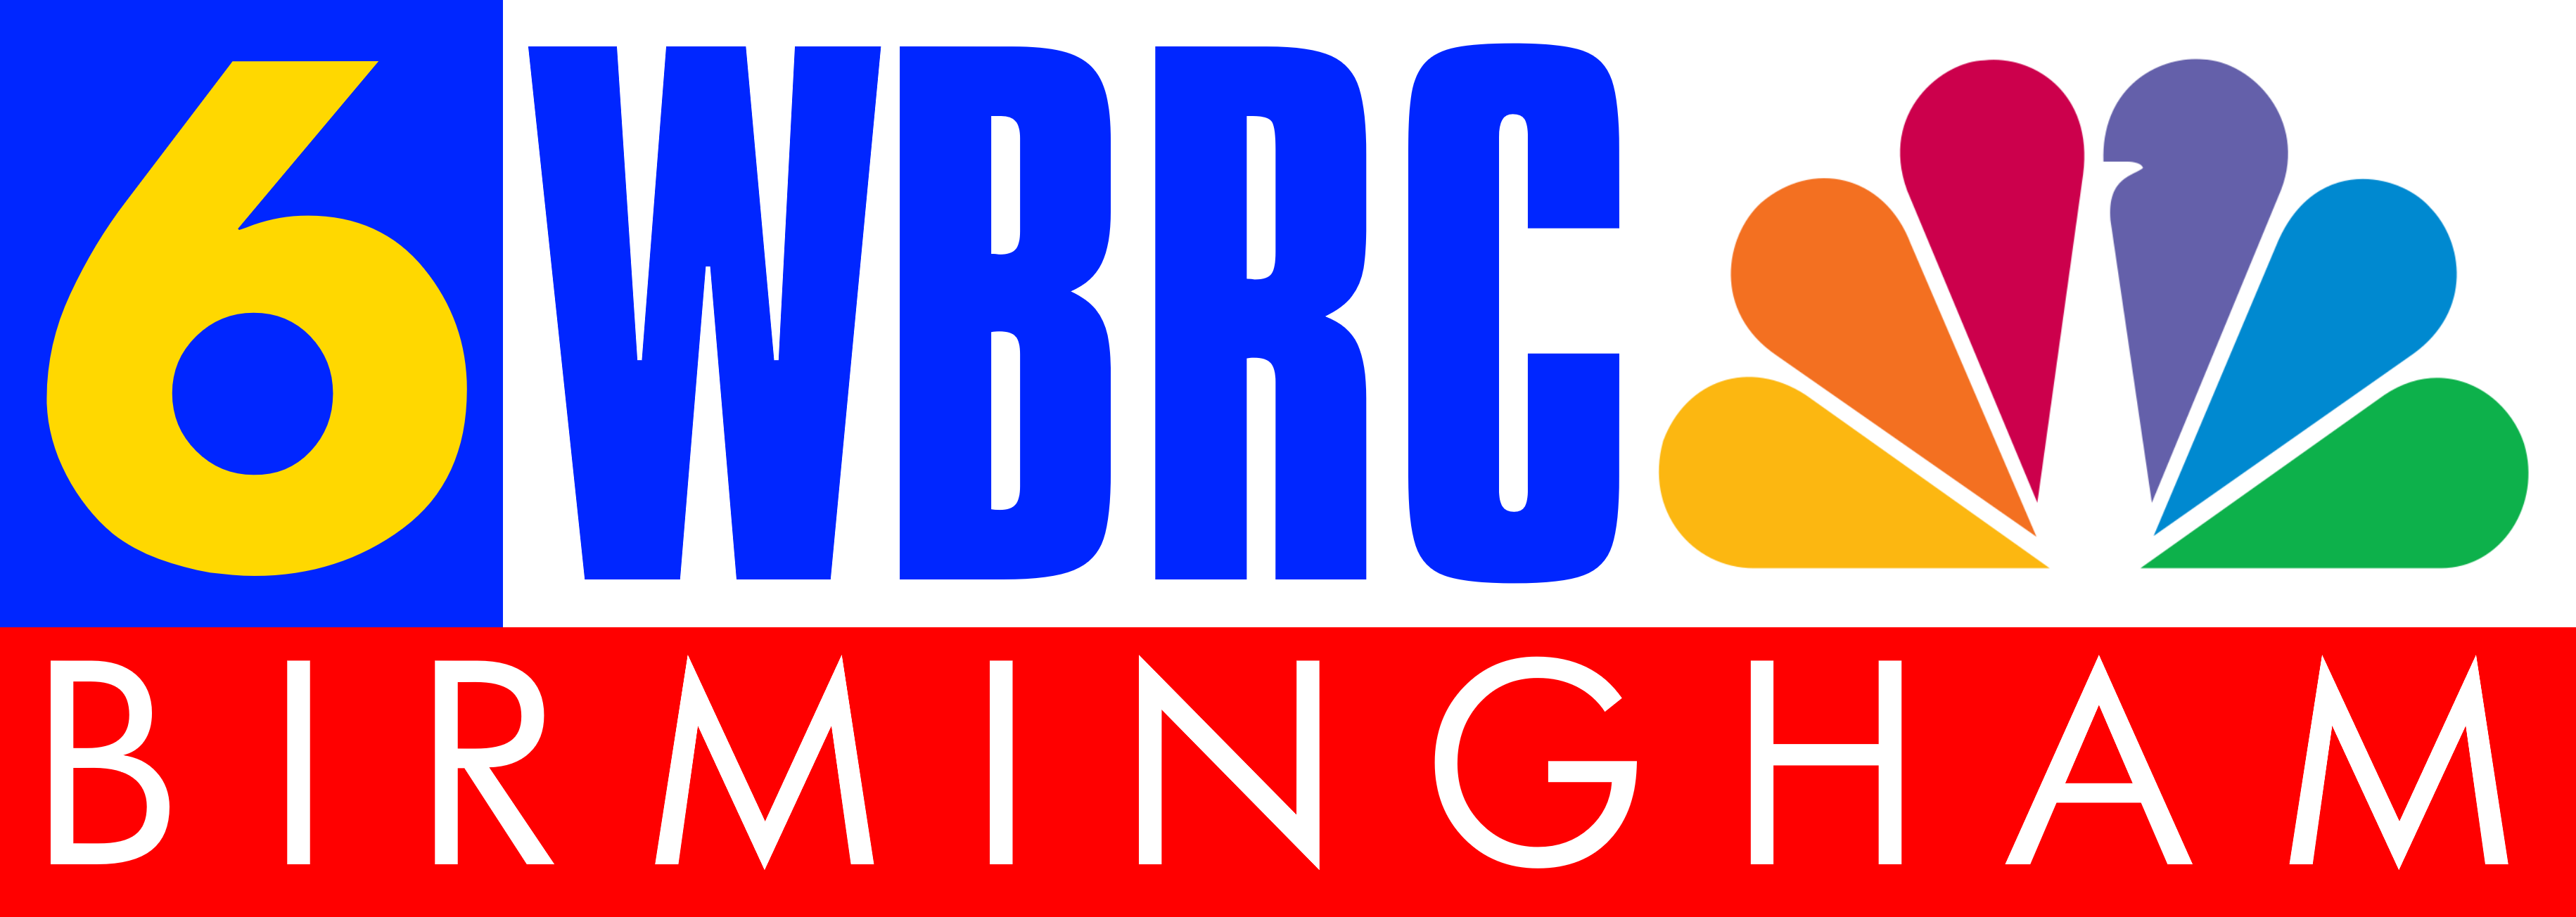 AlternateHistory.com's WBRC logo #1.png